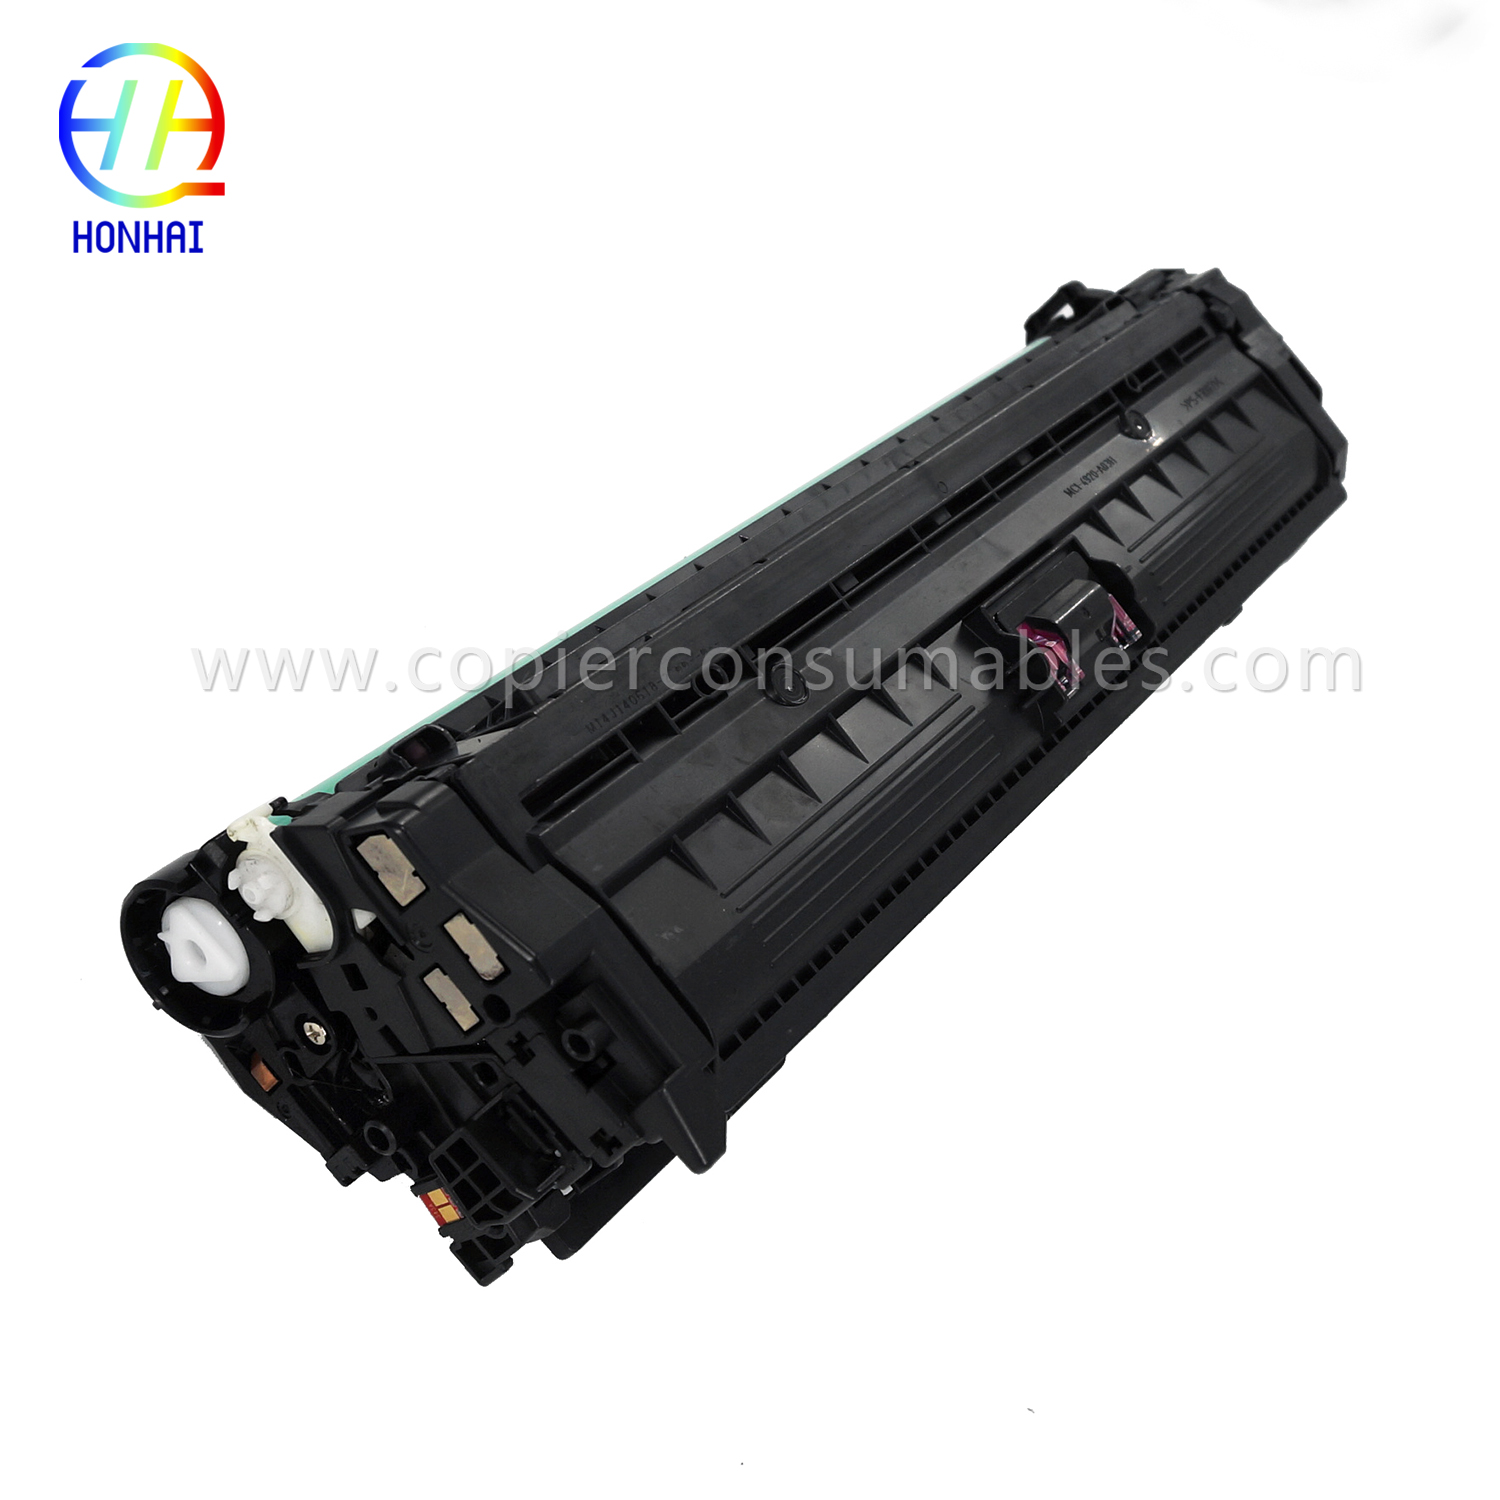 Toner Cartridge HP LaserJet Enterprise 700 Color M775dn M775f M775z M775z+ (CE343A 651A) (9) 拷贝